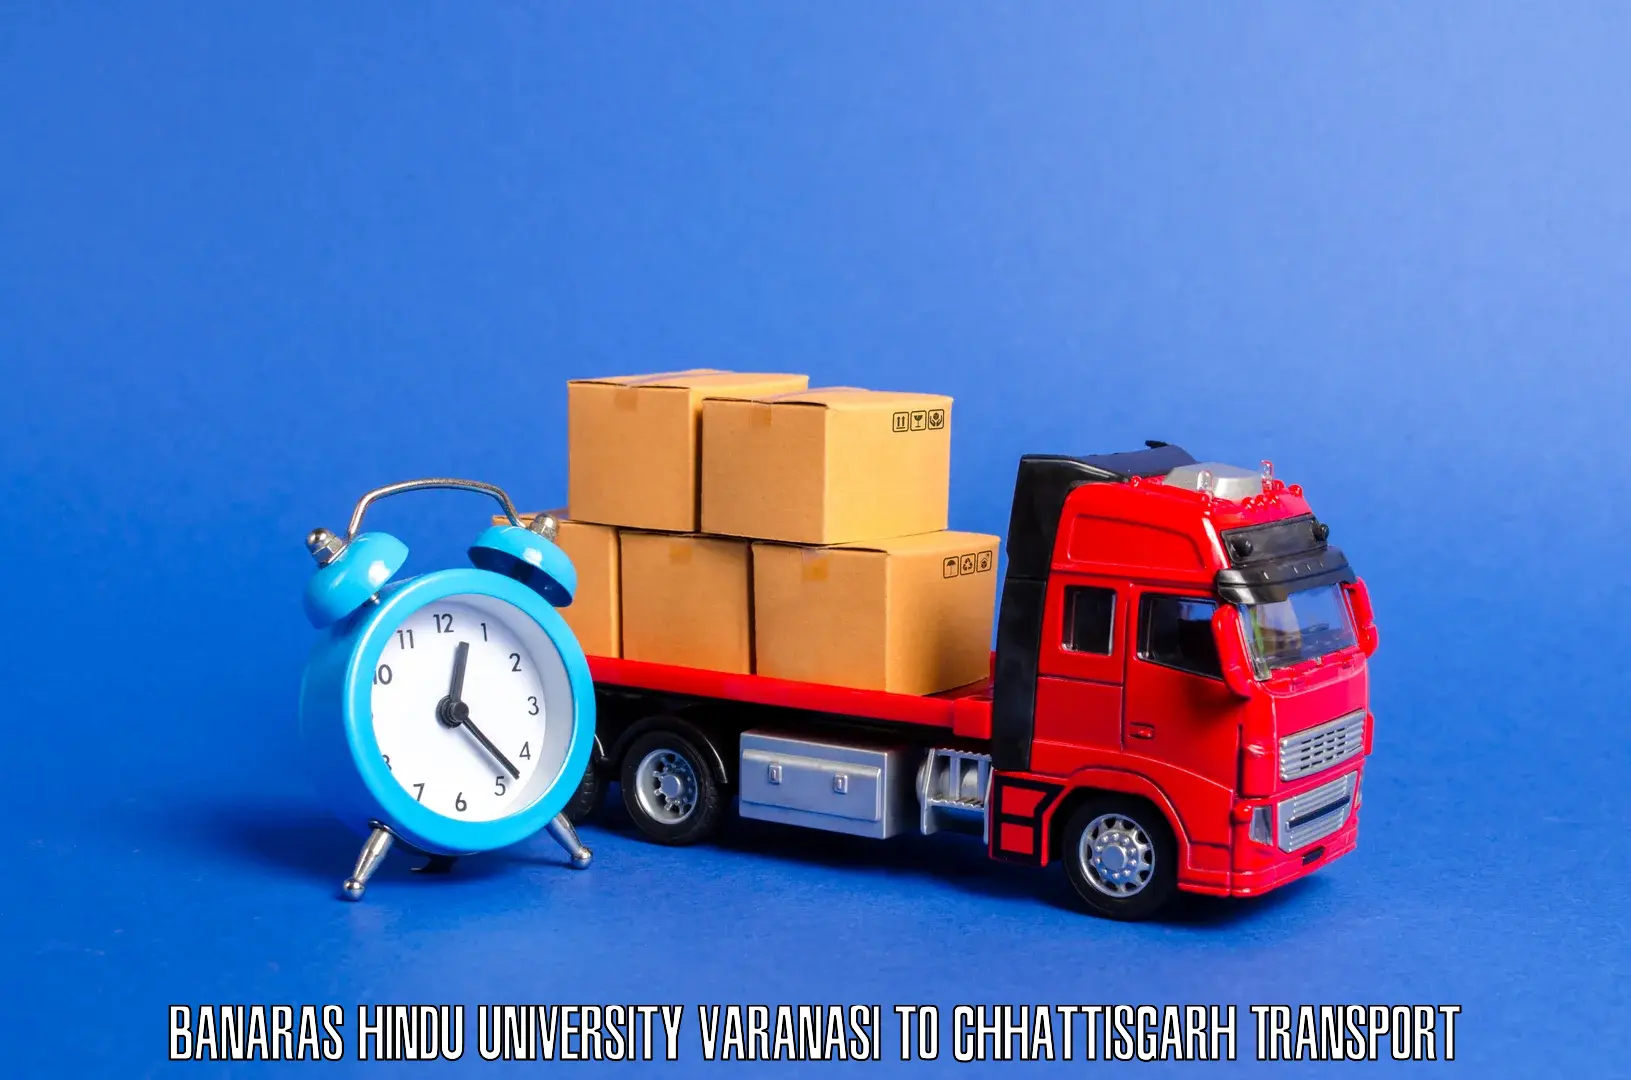 Commercial transport service Banaras Hindu University Varanasi to Chhattisgarh